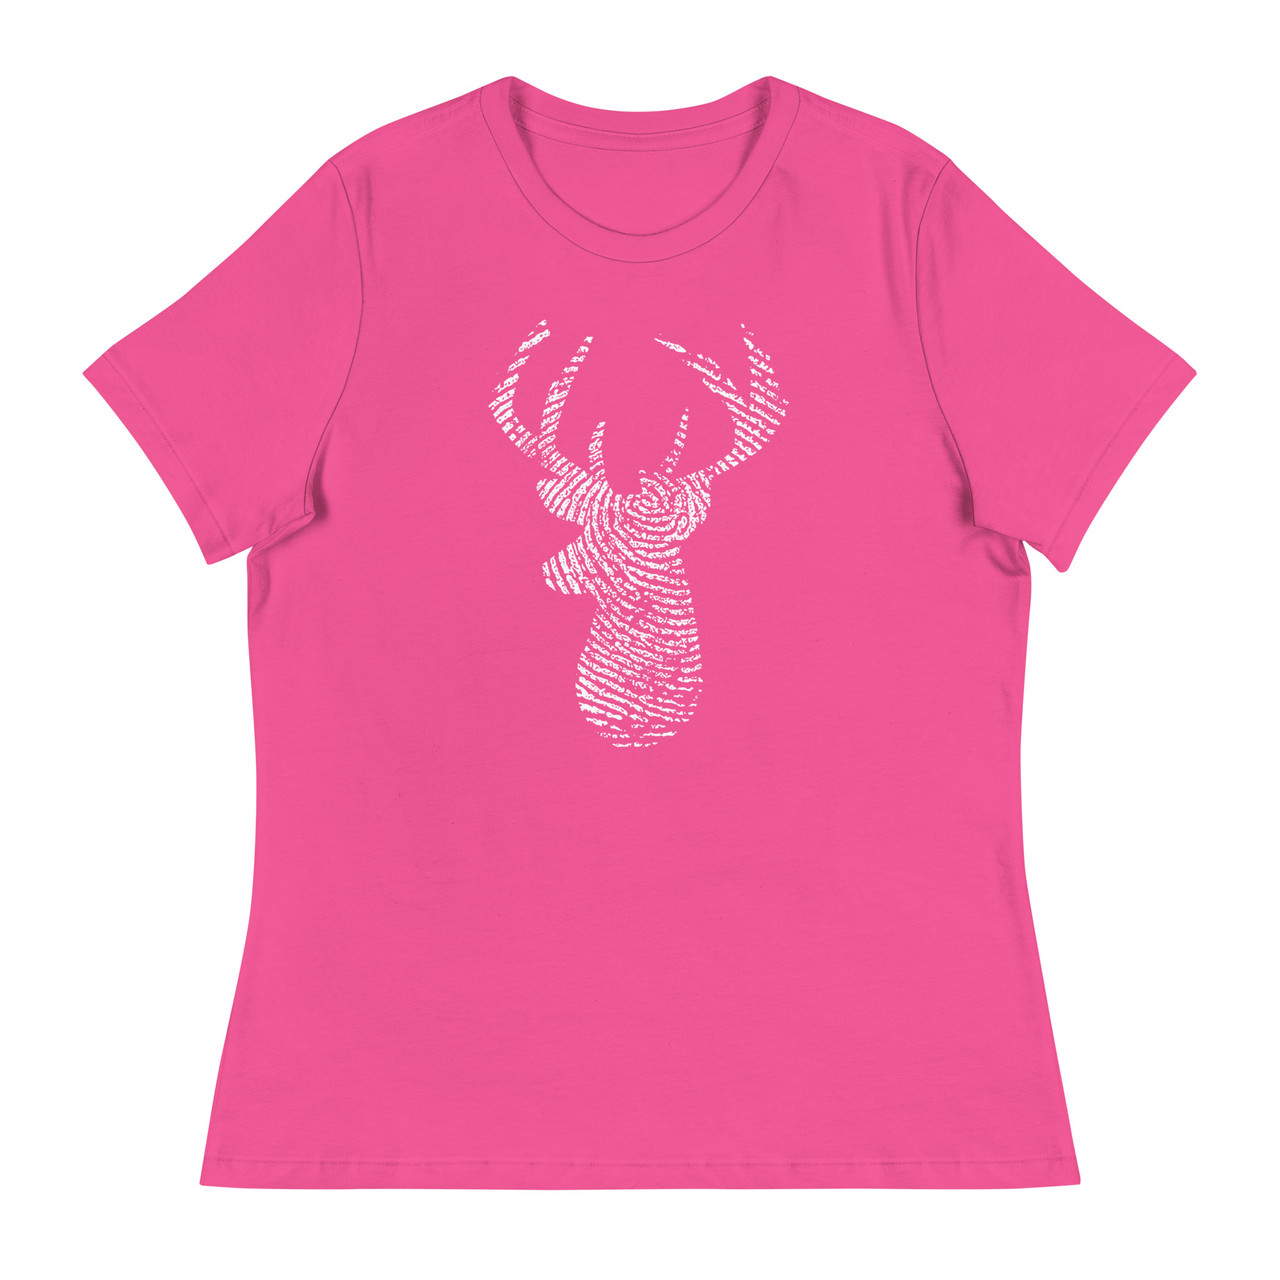 Deer Print Women's Relaxed T-Shirt - Bella + Canvas 6400